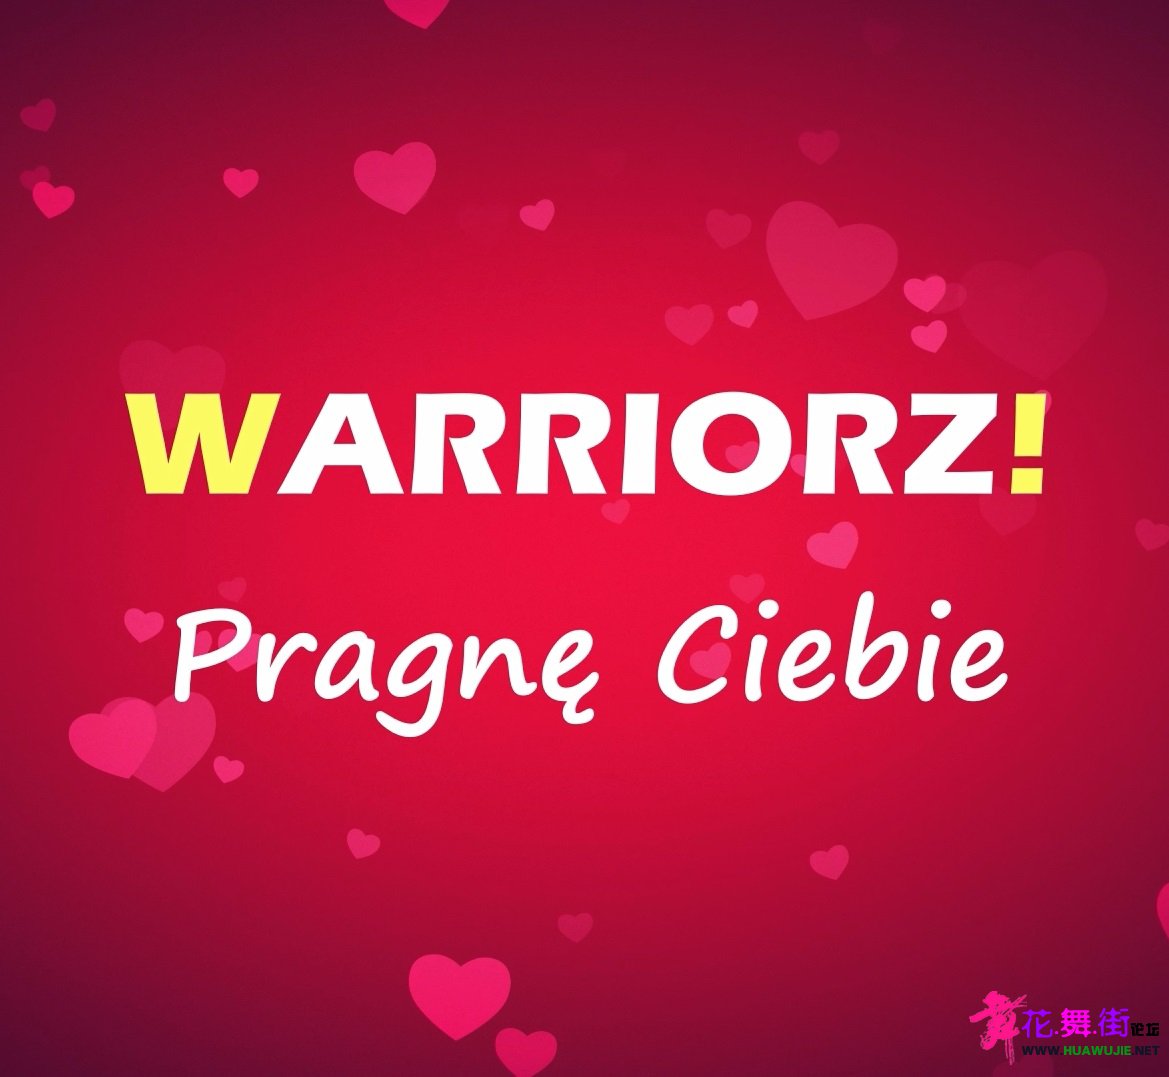 00-warriorz_-_pragne_ciebie-2021-front.jpg